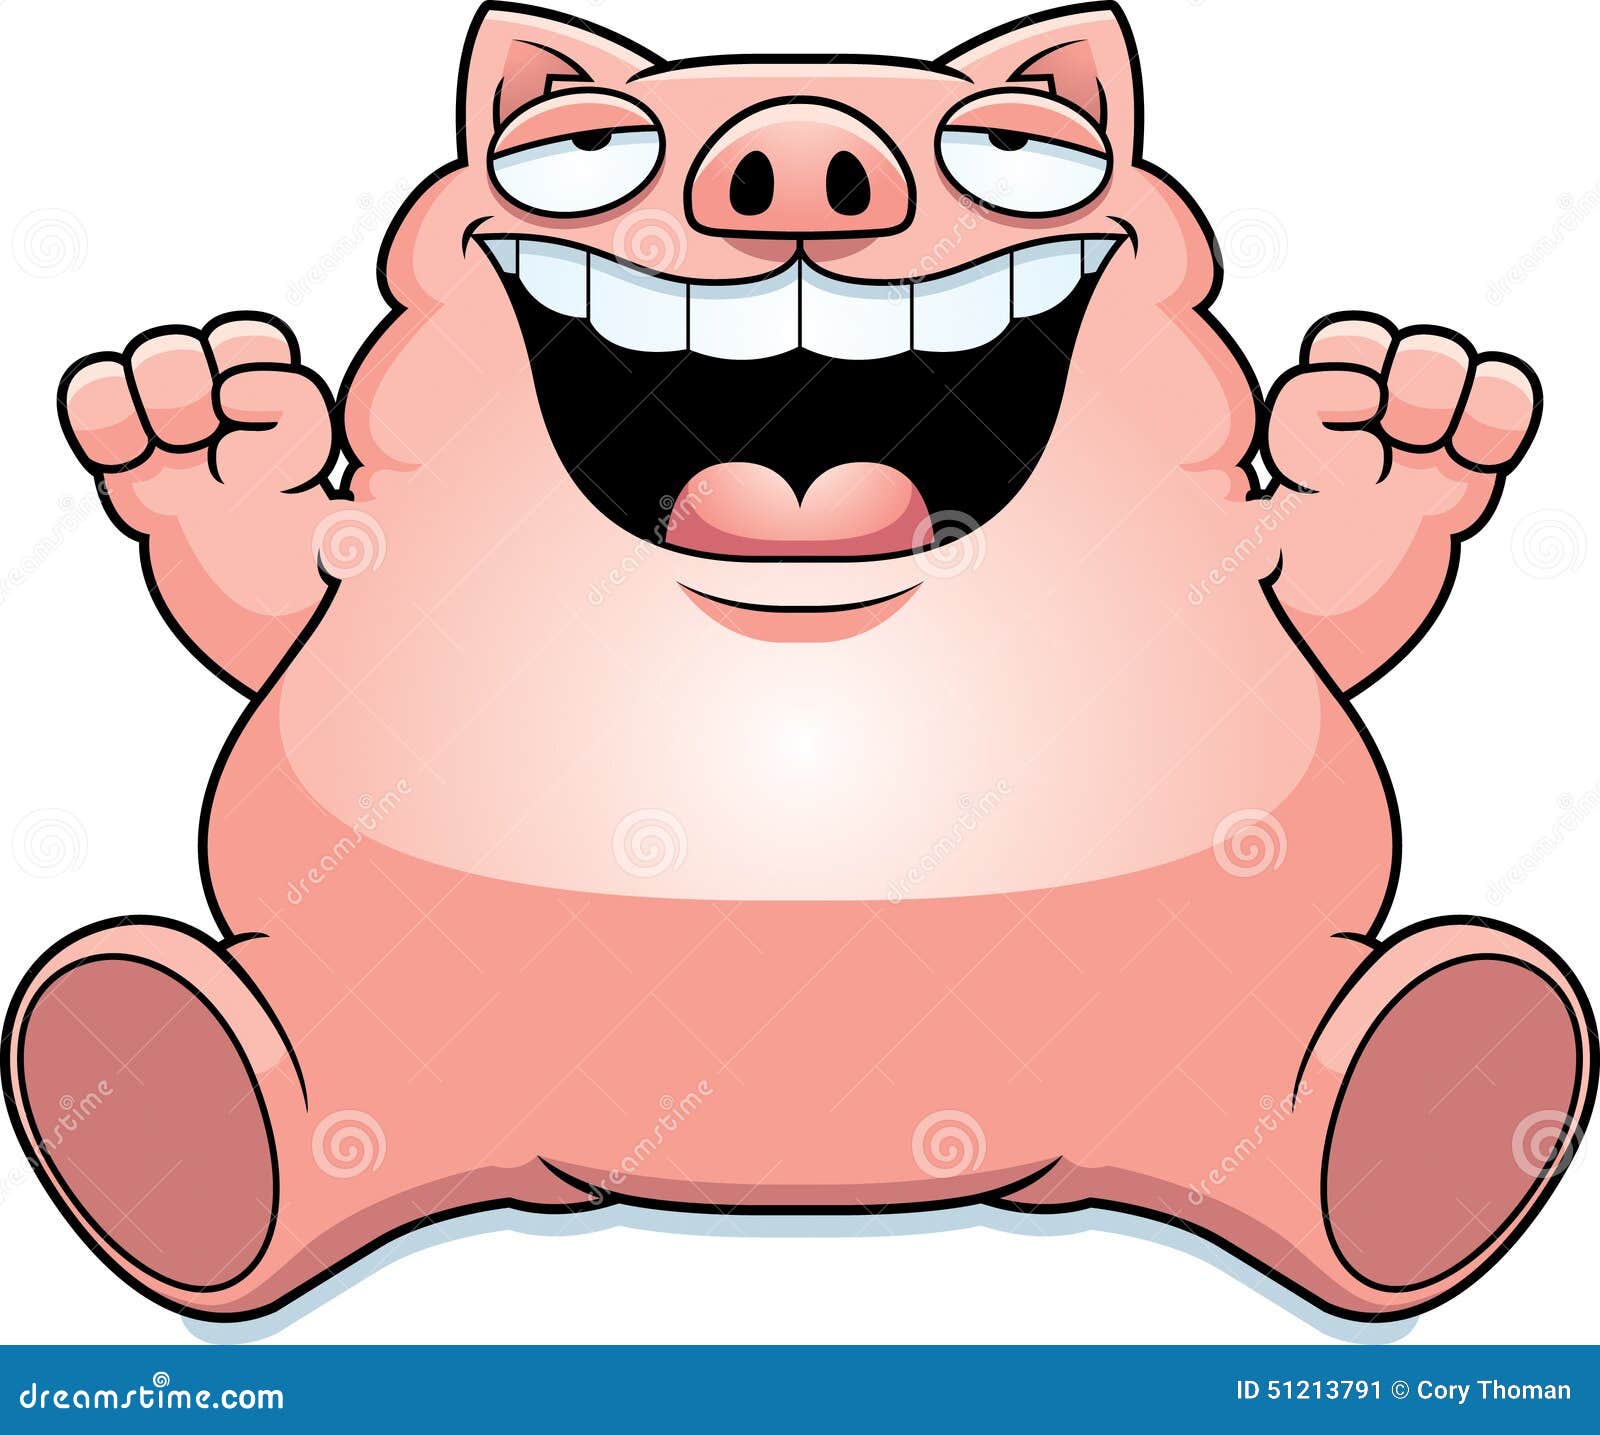 cartoon-fat-pig-sitting-illustration-smiling-51213791.jpg